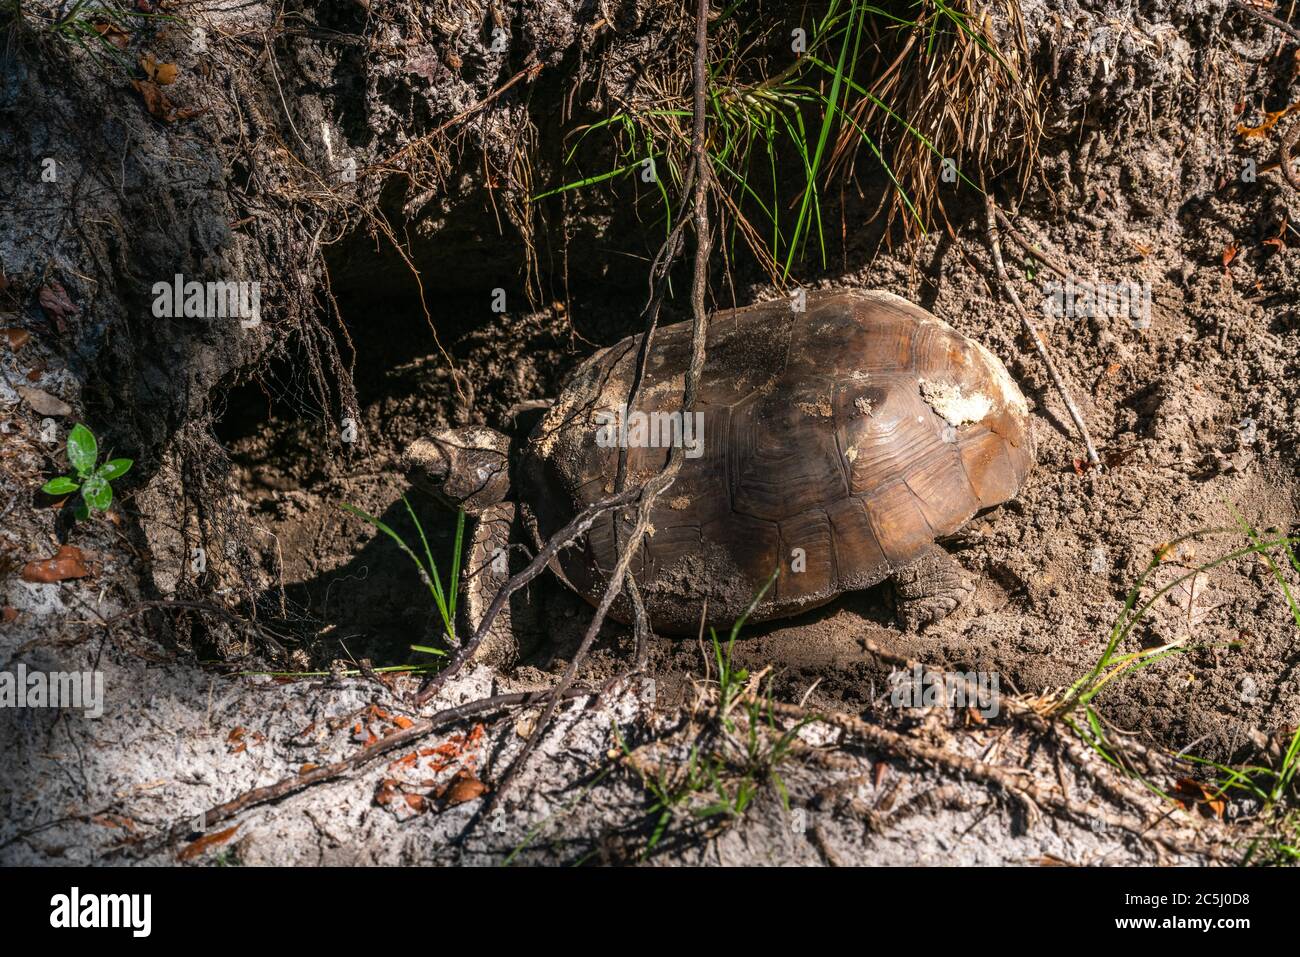 Une tortue ou une tortue qui creuse dans le sol pour y déposer ses œufs Banque D'Images